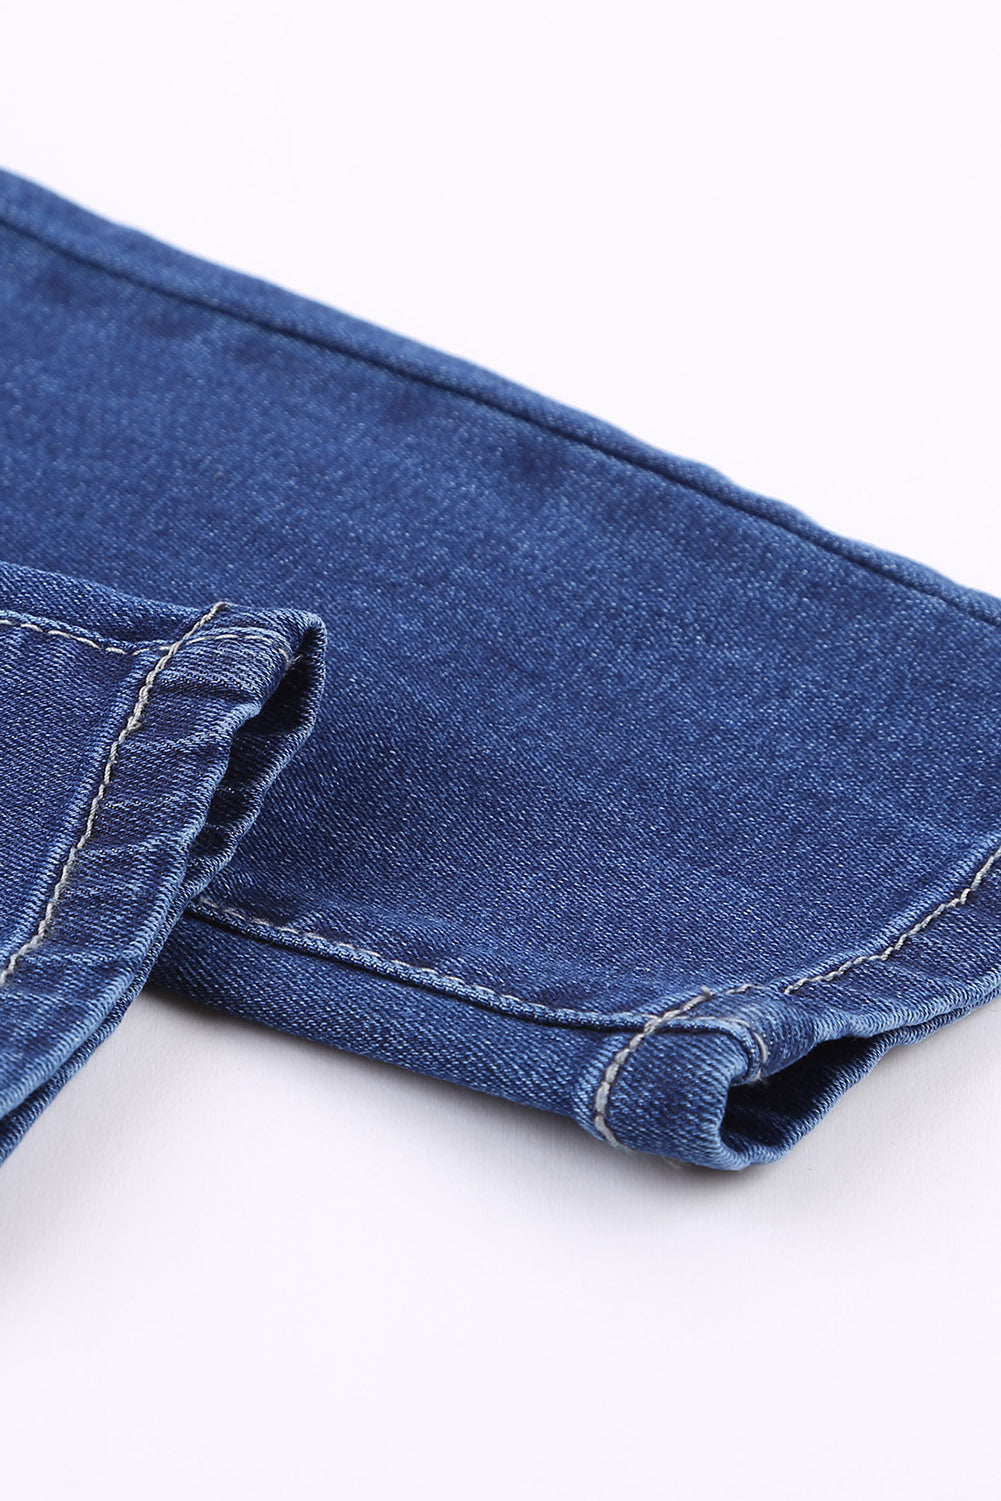 Blaue Skinny-Jeans mit Knopfleiste und hohem Bund